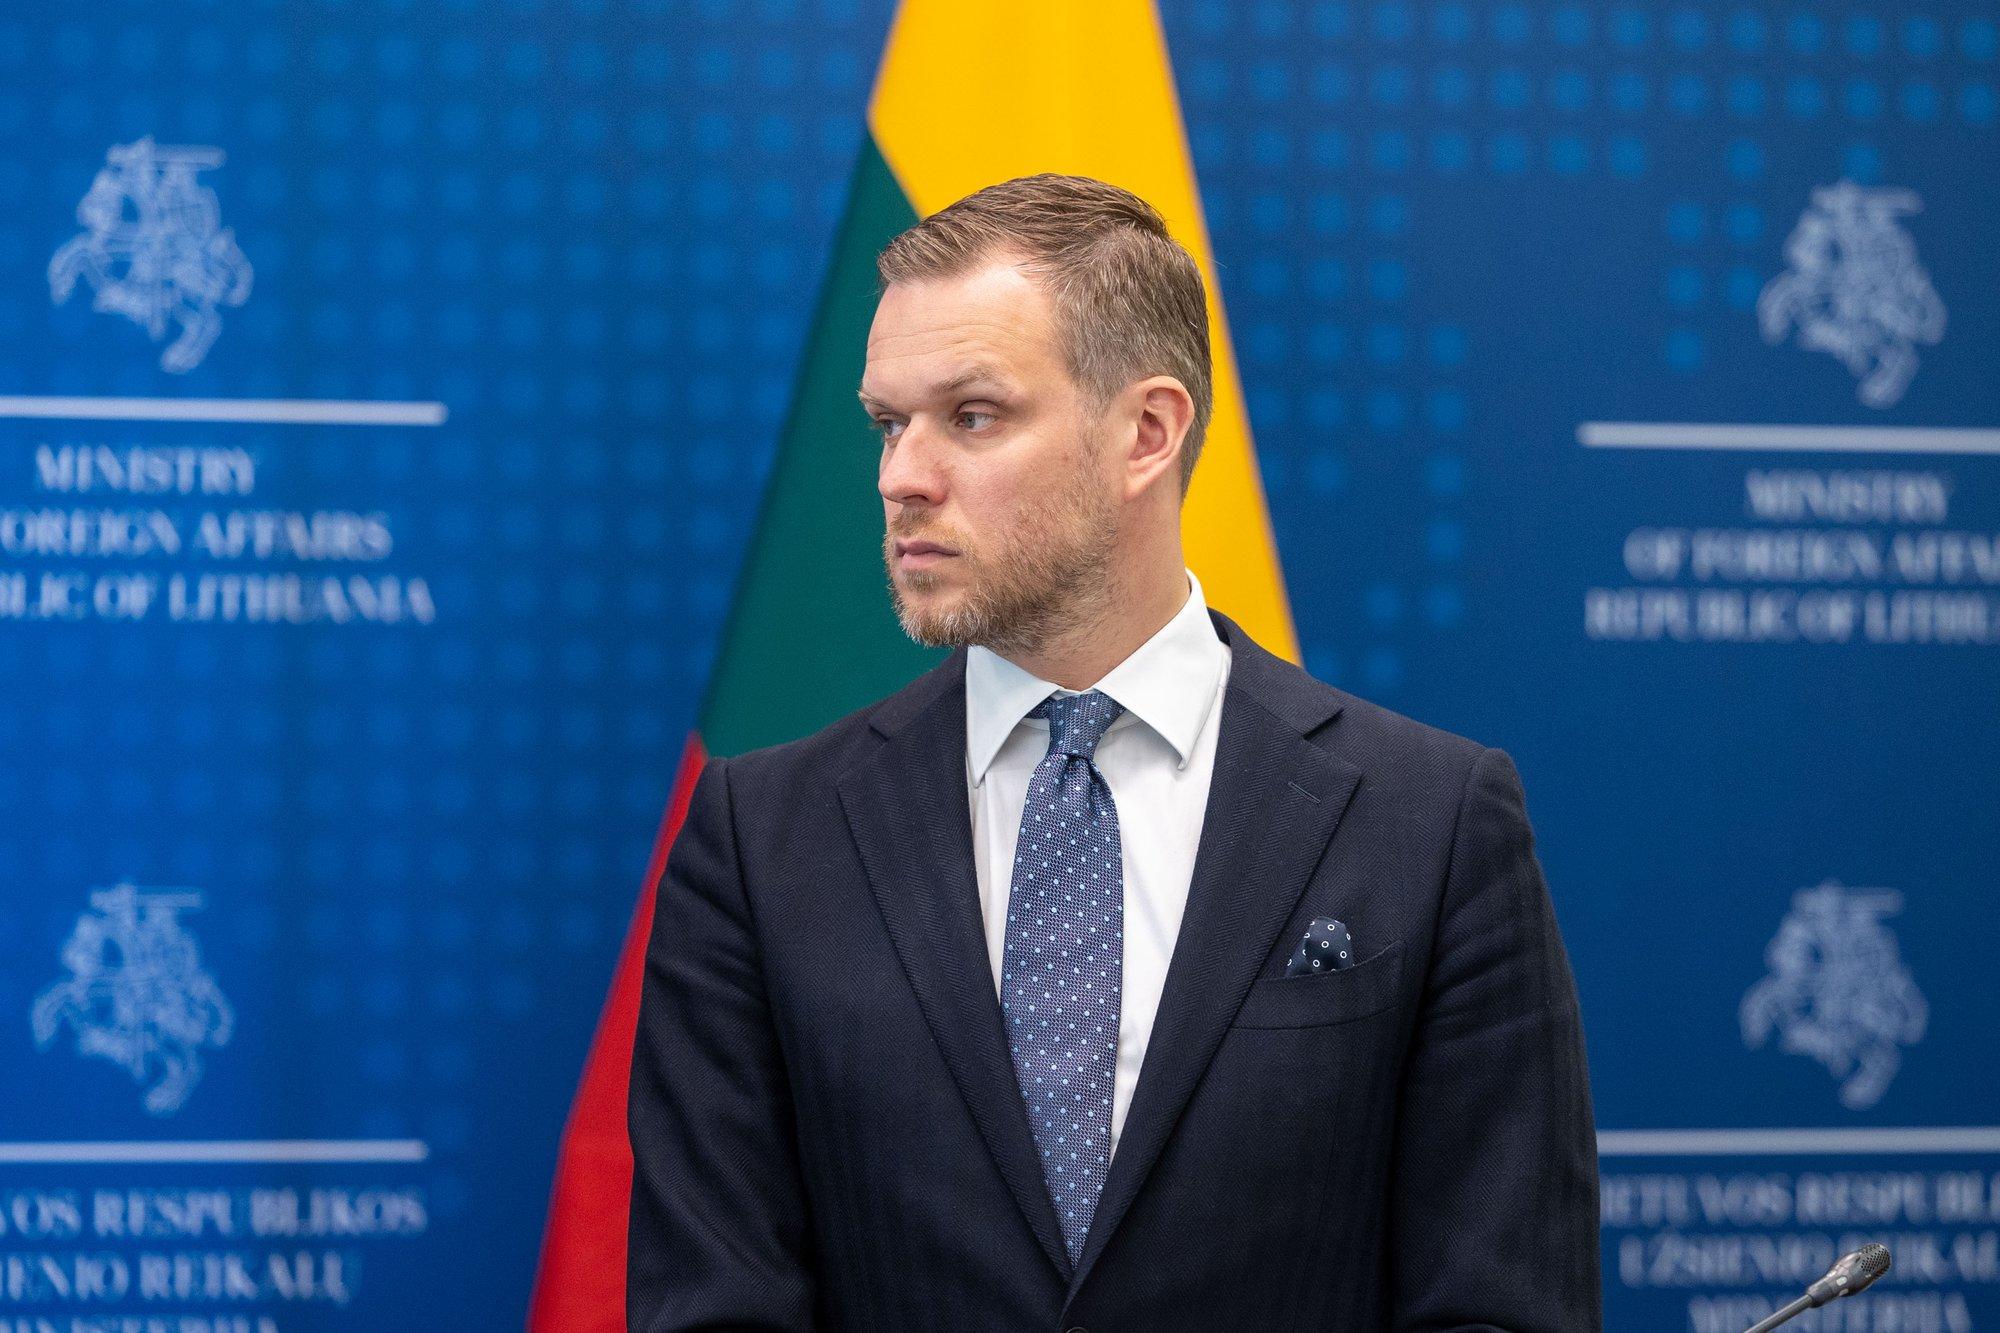 Глава МИД Литвы предложил Филиппинам сотрудничество в сфере развития СПГ-терминалов